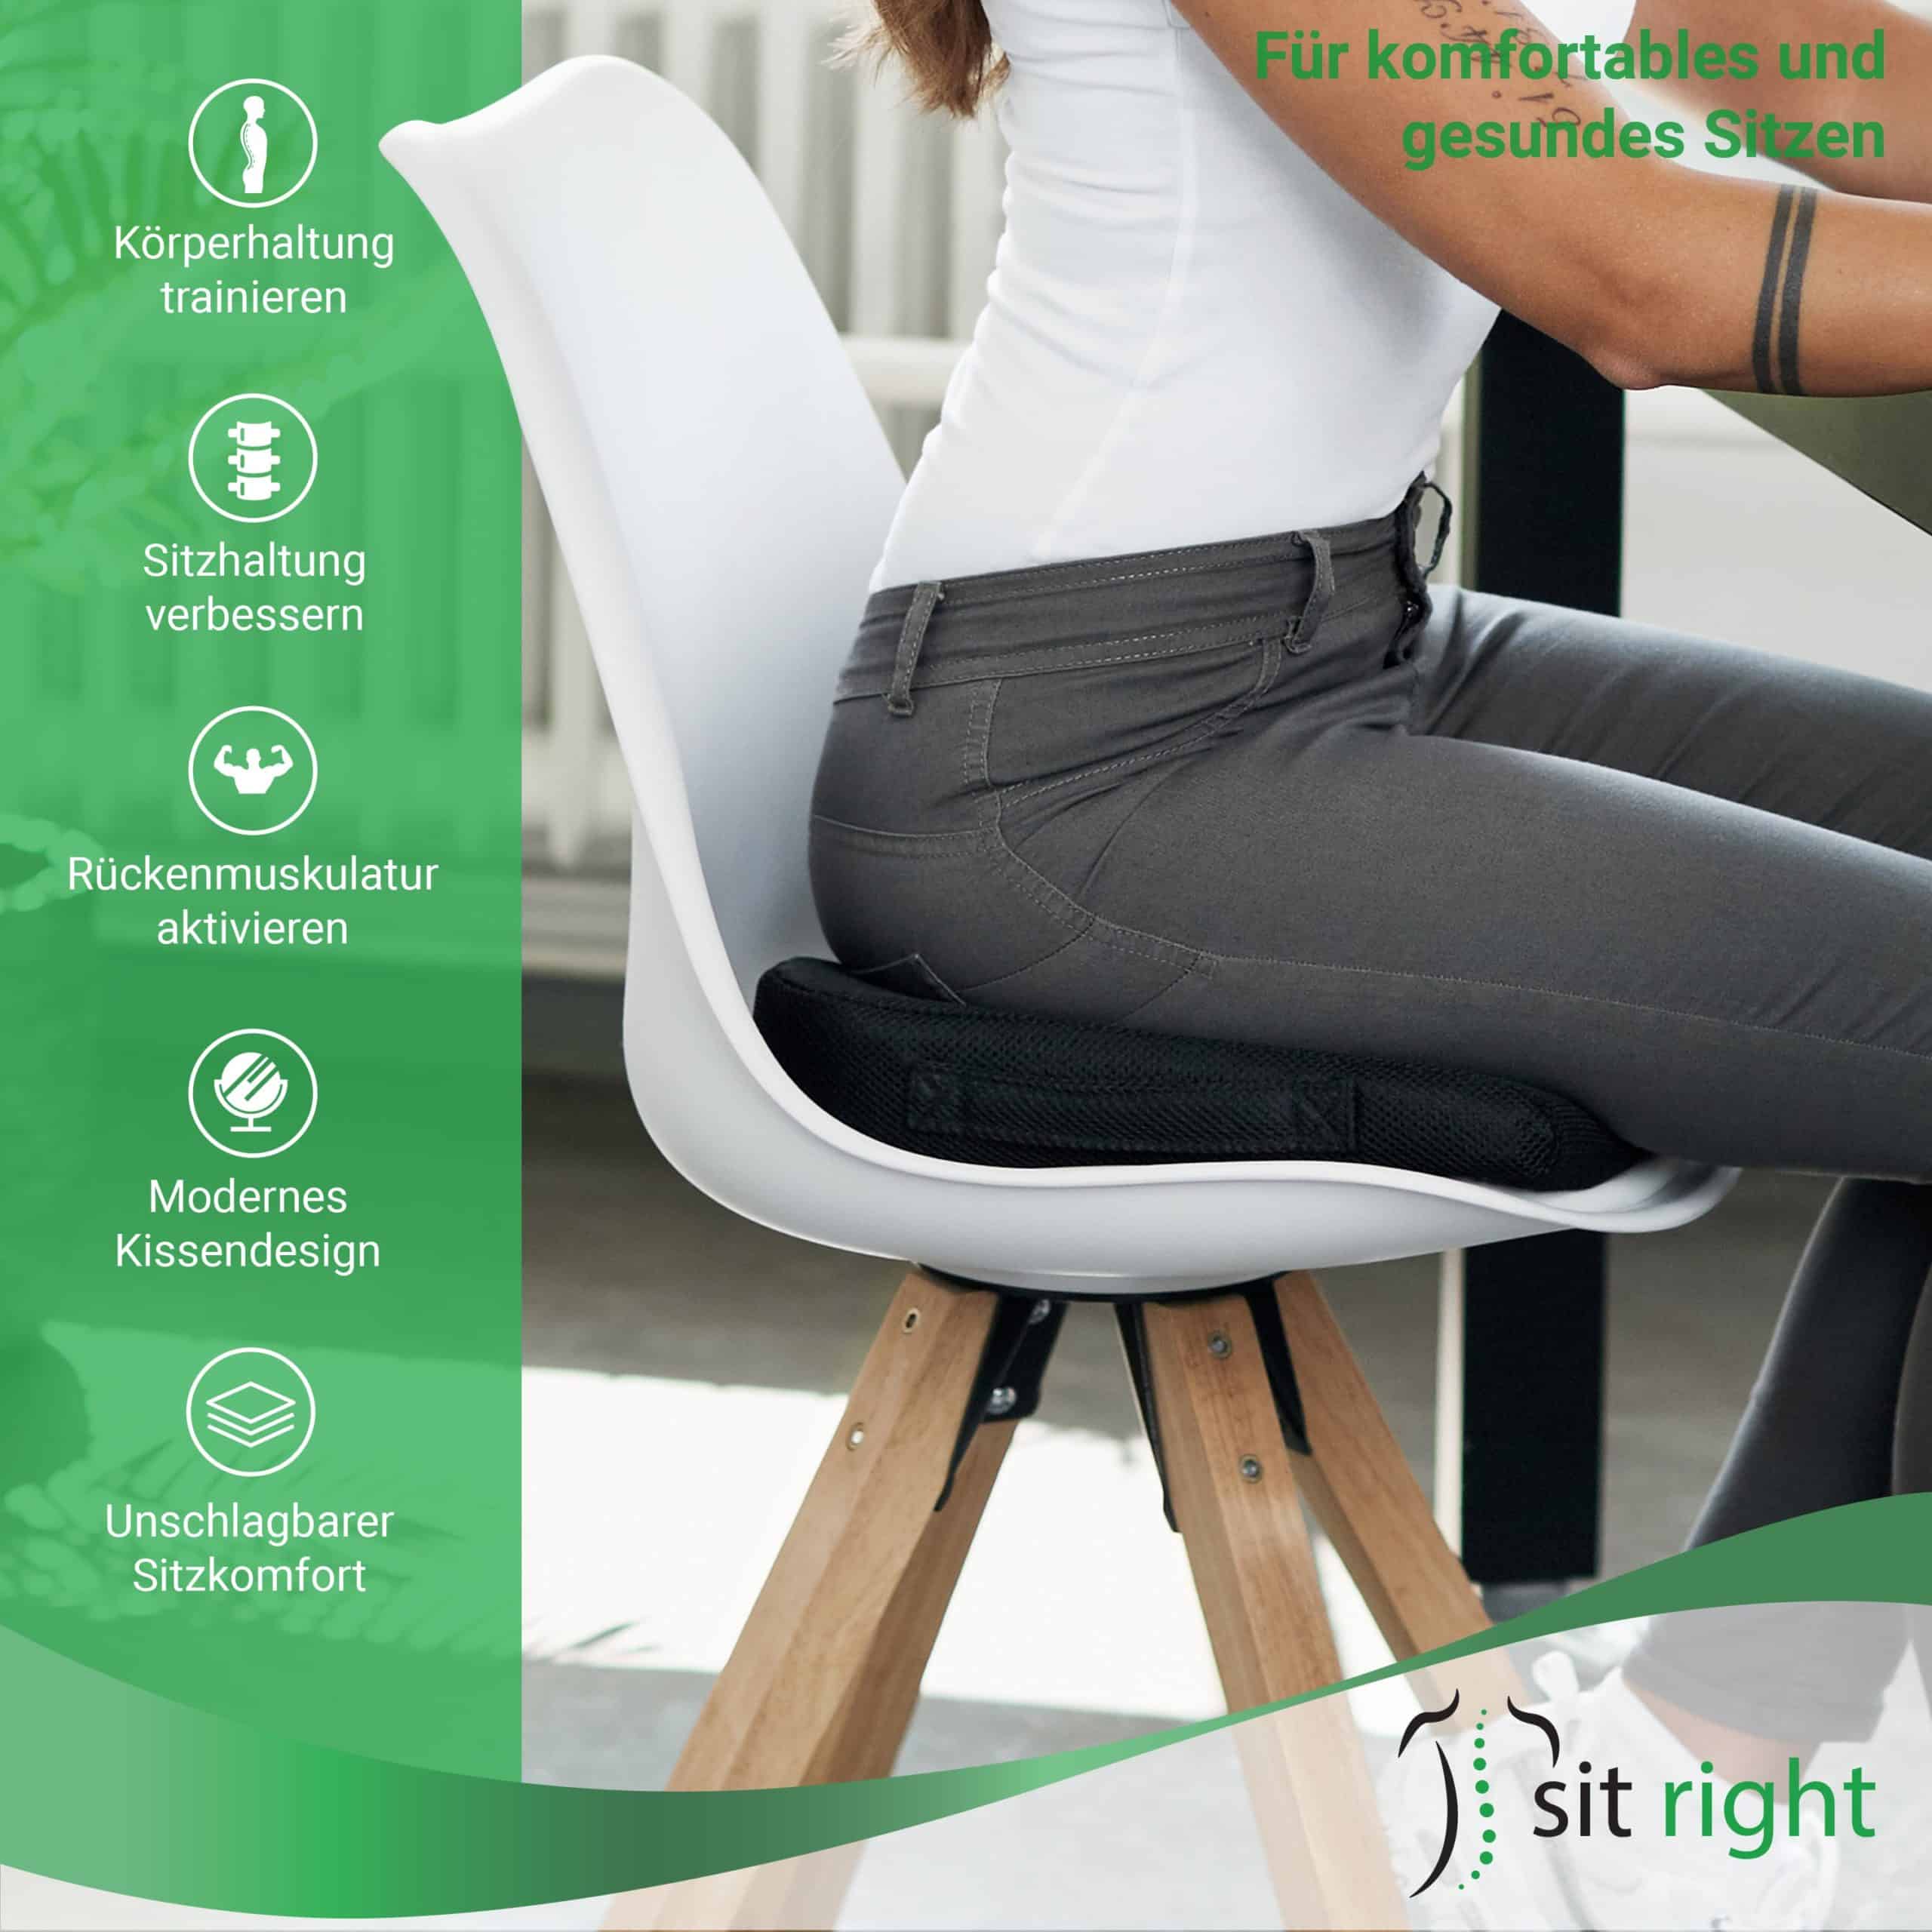 sit right Keilkissen - Sitzkissen für verbesserte Haltung - Hart - Sitzkeil  ideal als bequemes Stuhlkissen - Sitzerhöhung für Auto, Büro, Rollstuhl -  Extra groß - schwarz - bis 90kg Körpergewicht